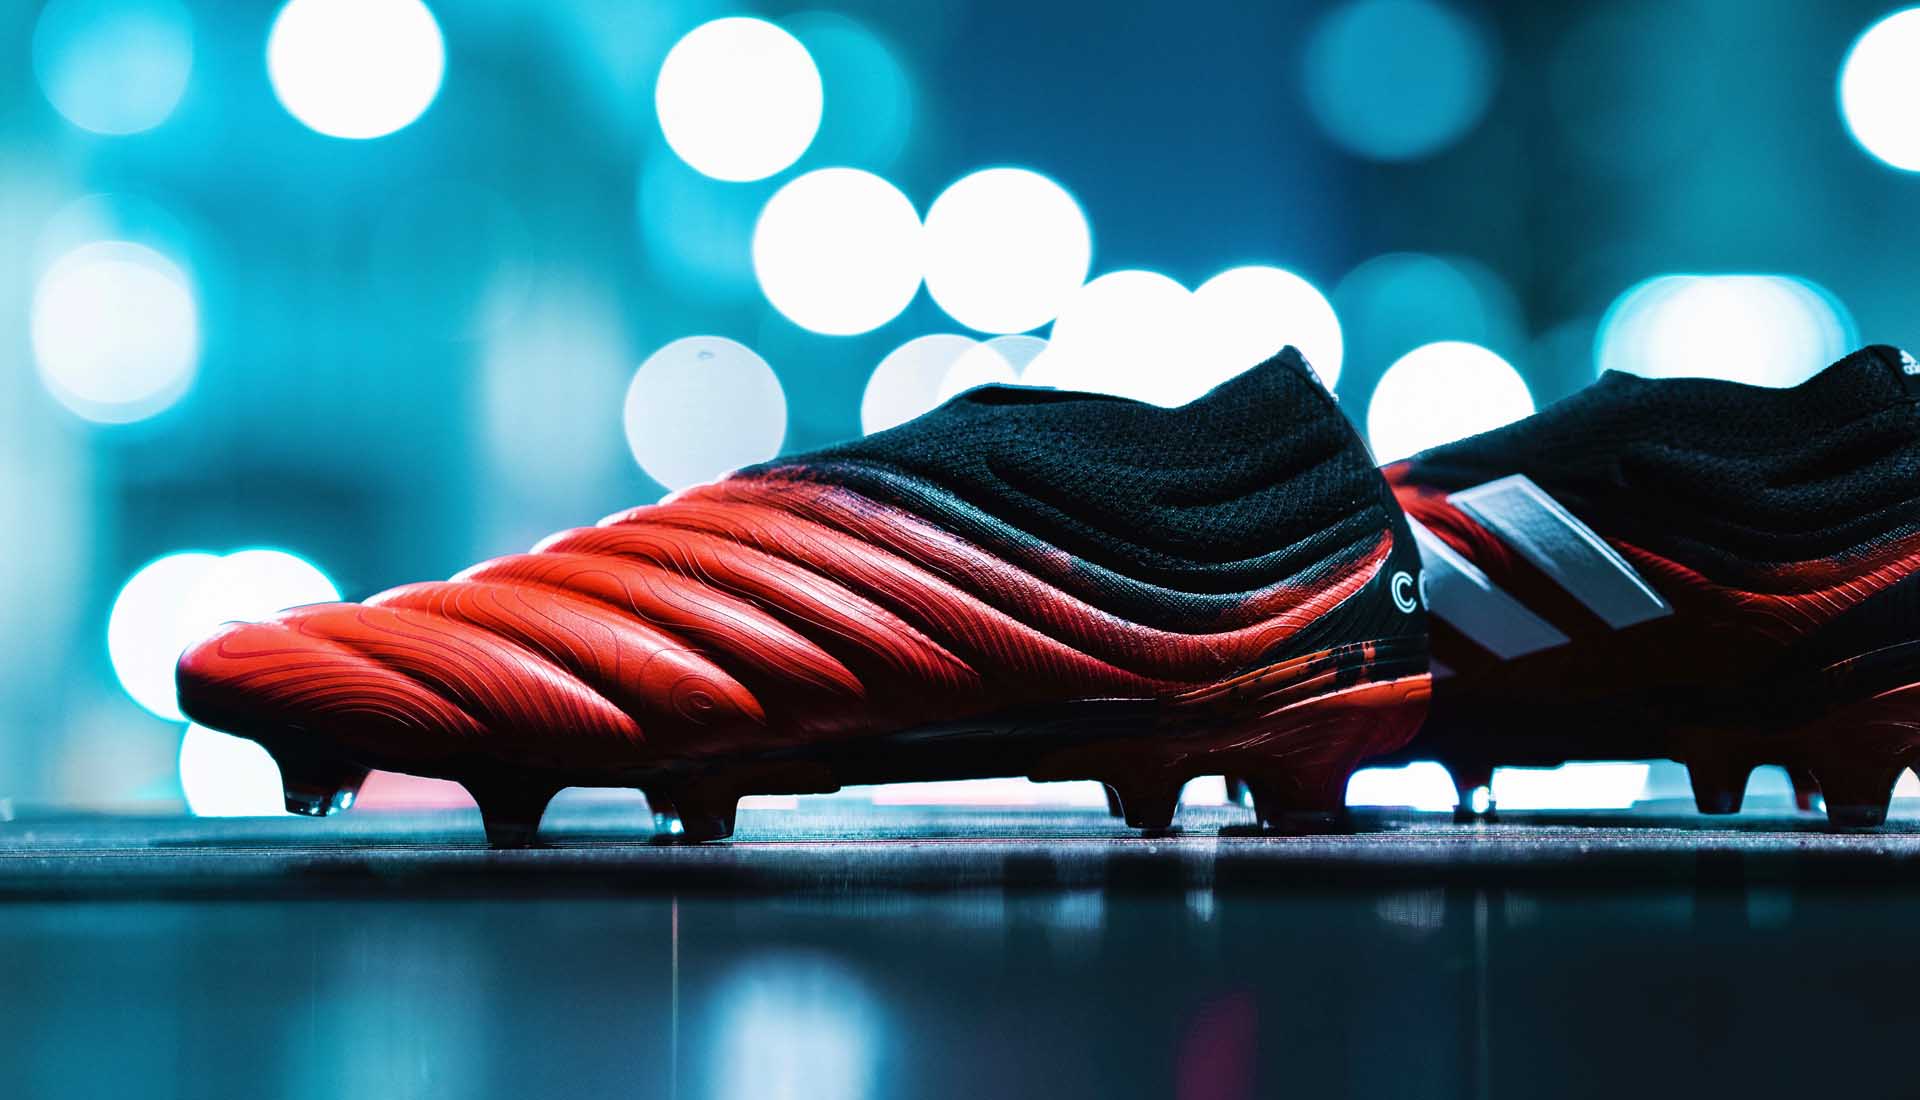 Adidas Copa là dòng giày đá bóng được làm bằng da thật của Adidas